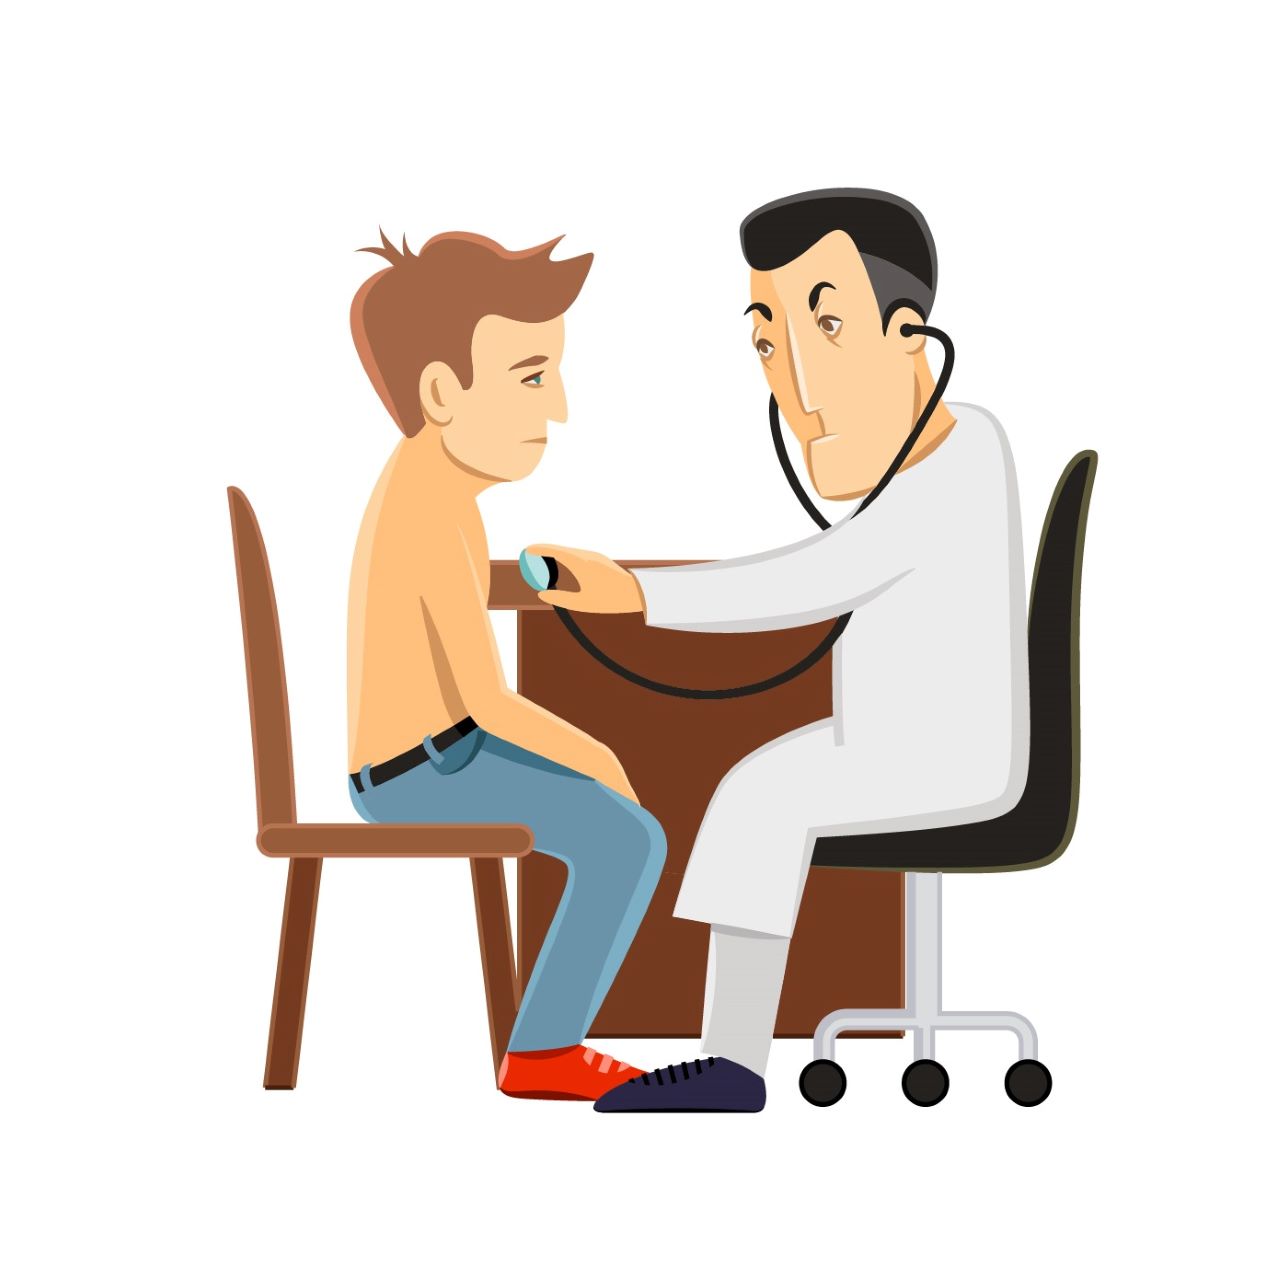 Ilustracija prikazuje dječaka koji ima problema pri disanju i liječnik mu sluša pluća.